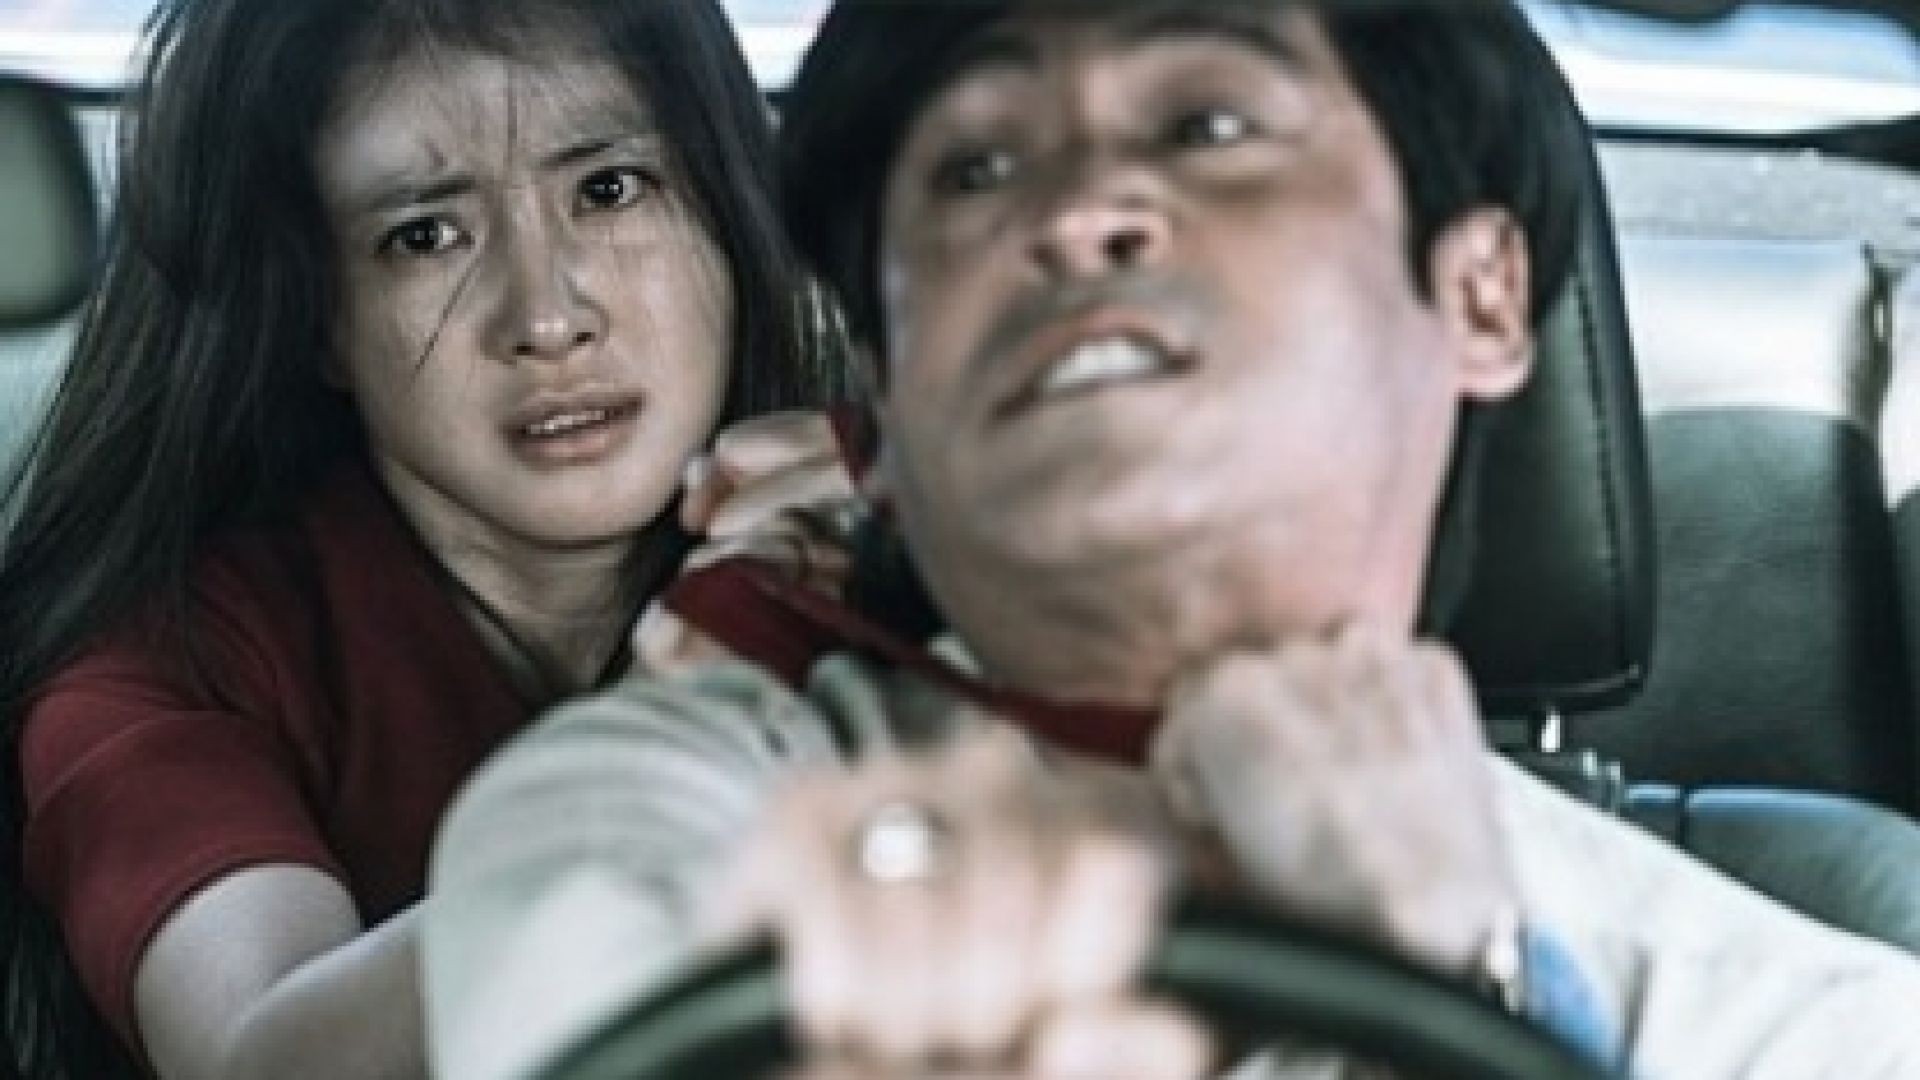 Nonton Film Action Korea Subtitles Bahasa Indonesia Terbaru Paling Seru Full Movie Wanita Tangguh